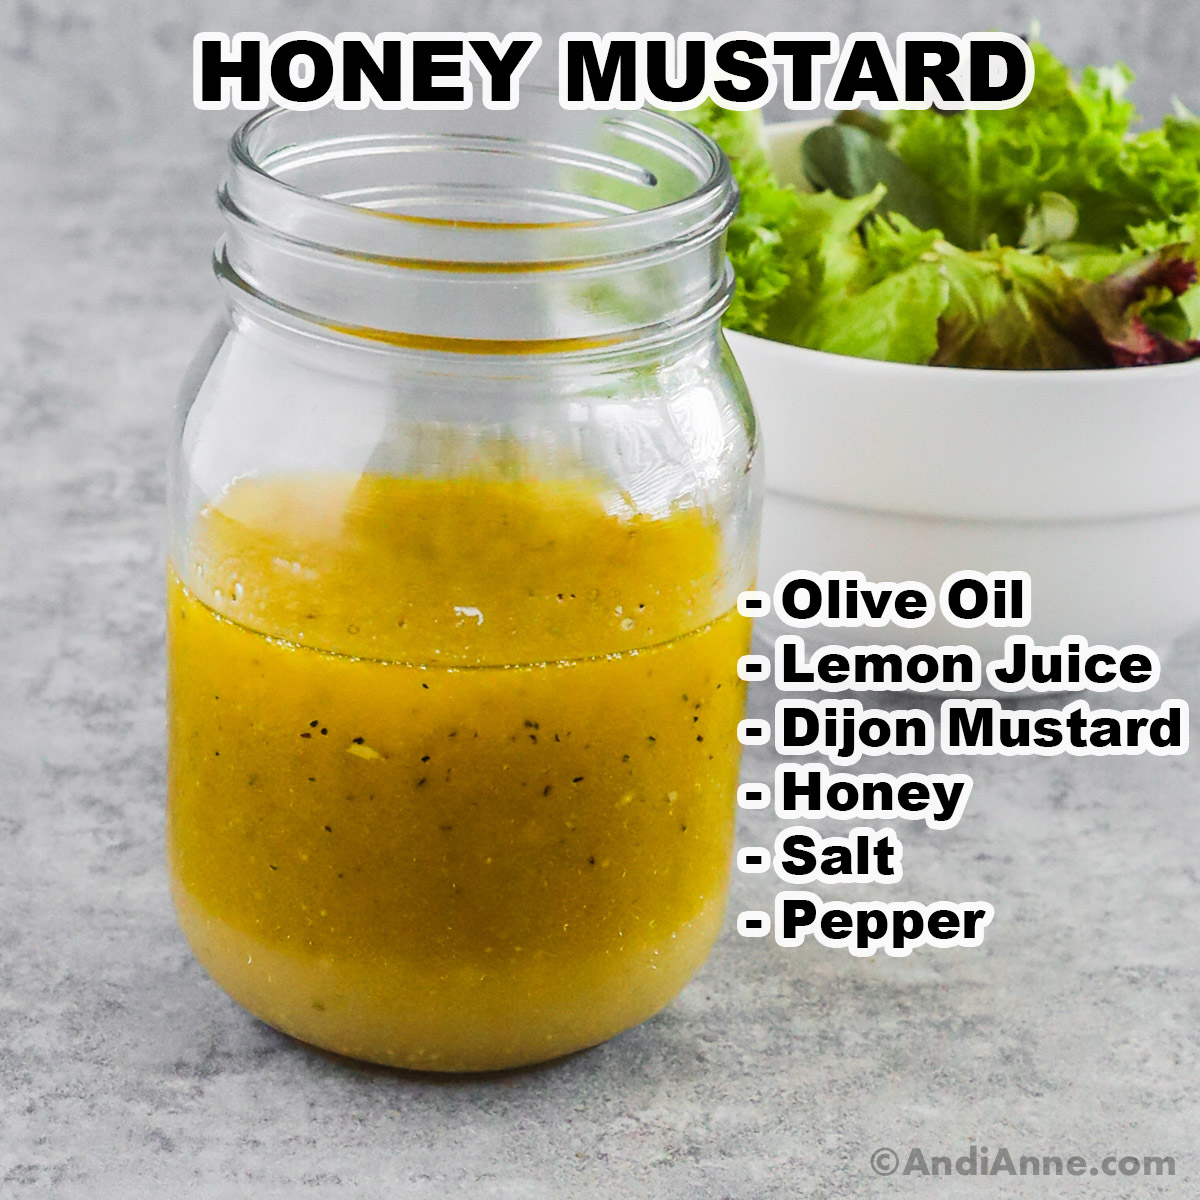 A jar of honey mustard salad dressing and ingredients listed including olive oil, lemon juice, dijon mustard, honey salt and pepper.